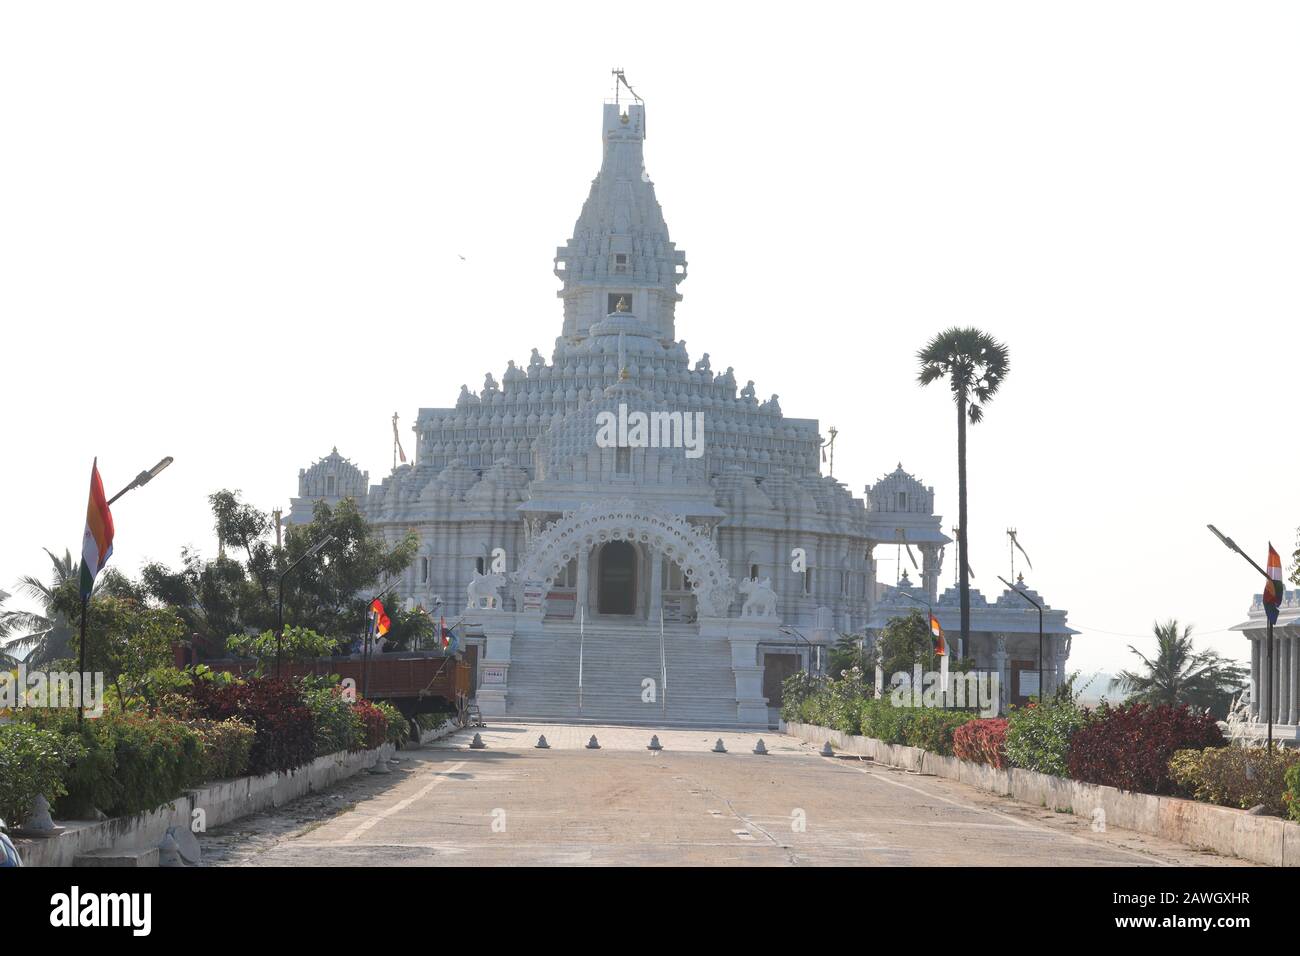 architettura esterna immagine del tempio di jain costruito da marmo bianco da chyundo, india, concetto di viaggio Foto Stock